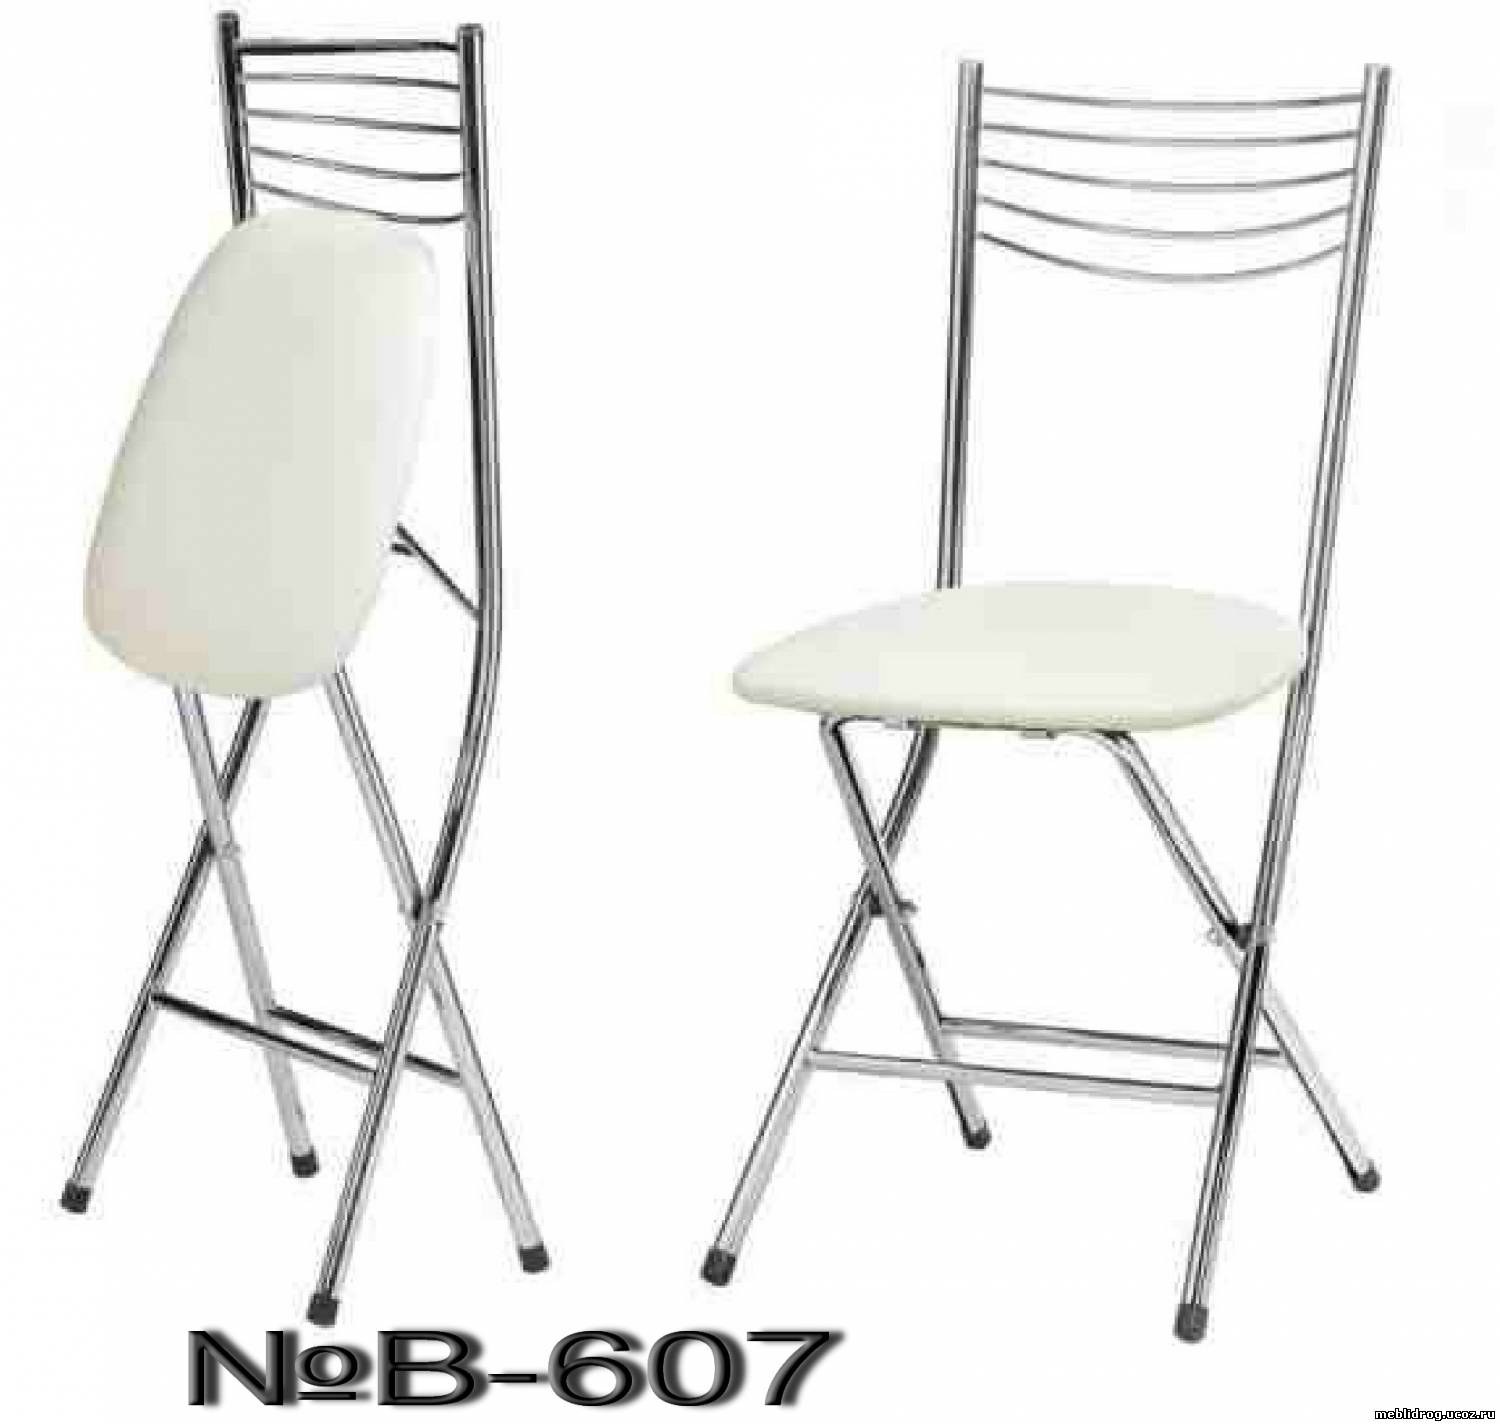 Недорогие складные стулья. Стул складной Сатурн модель СС-01. Стул кухонный складной Nika cch2/3.